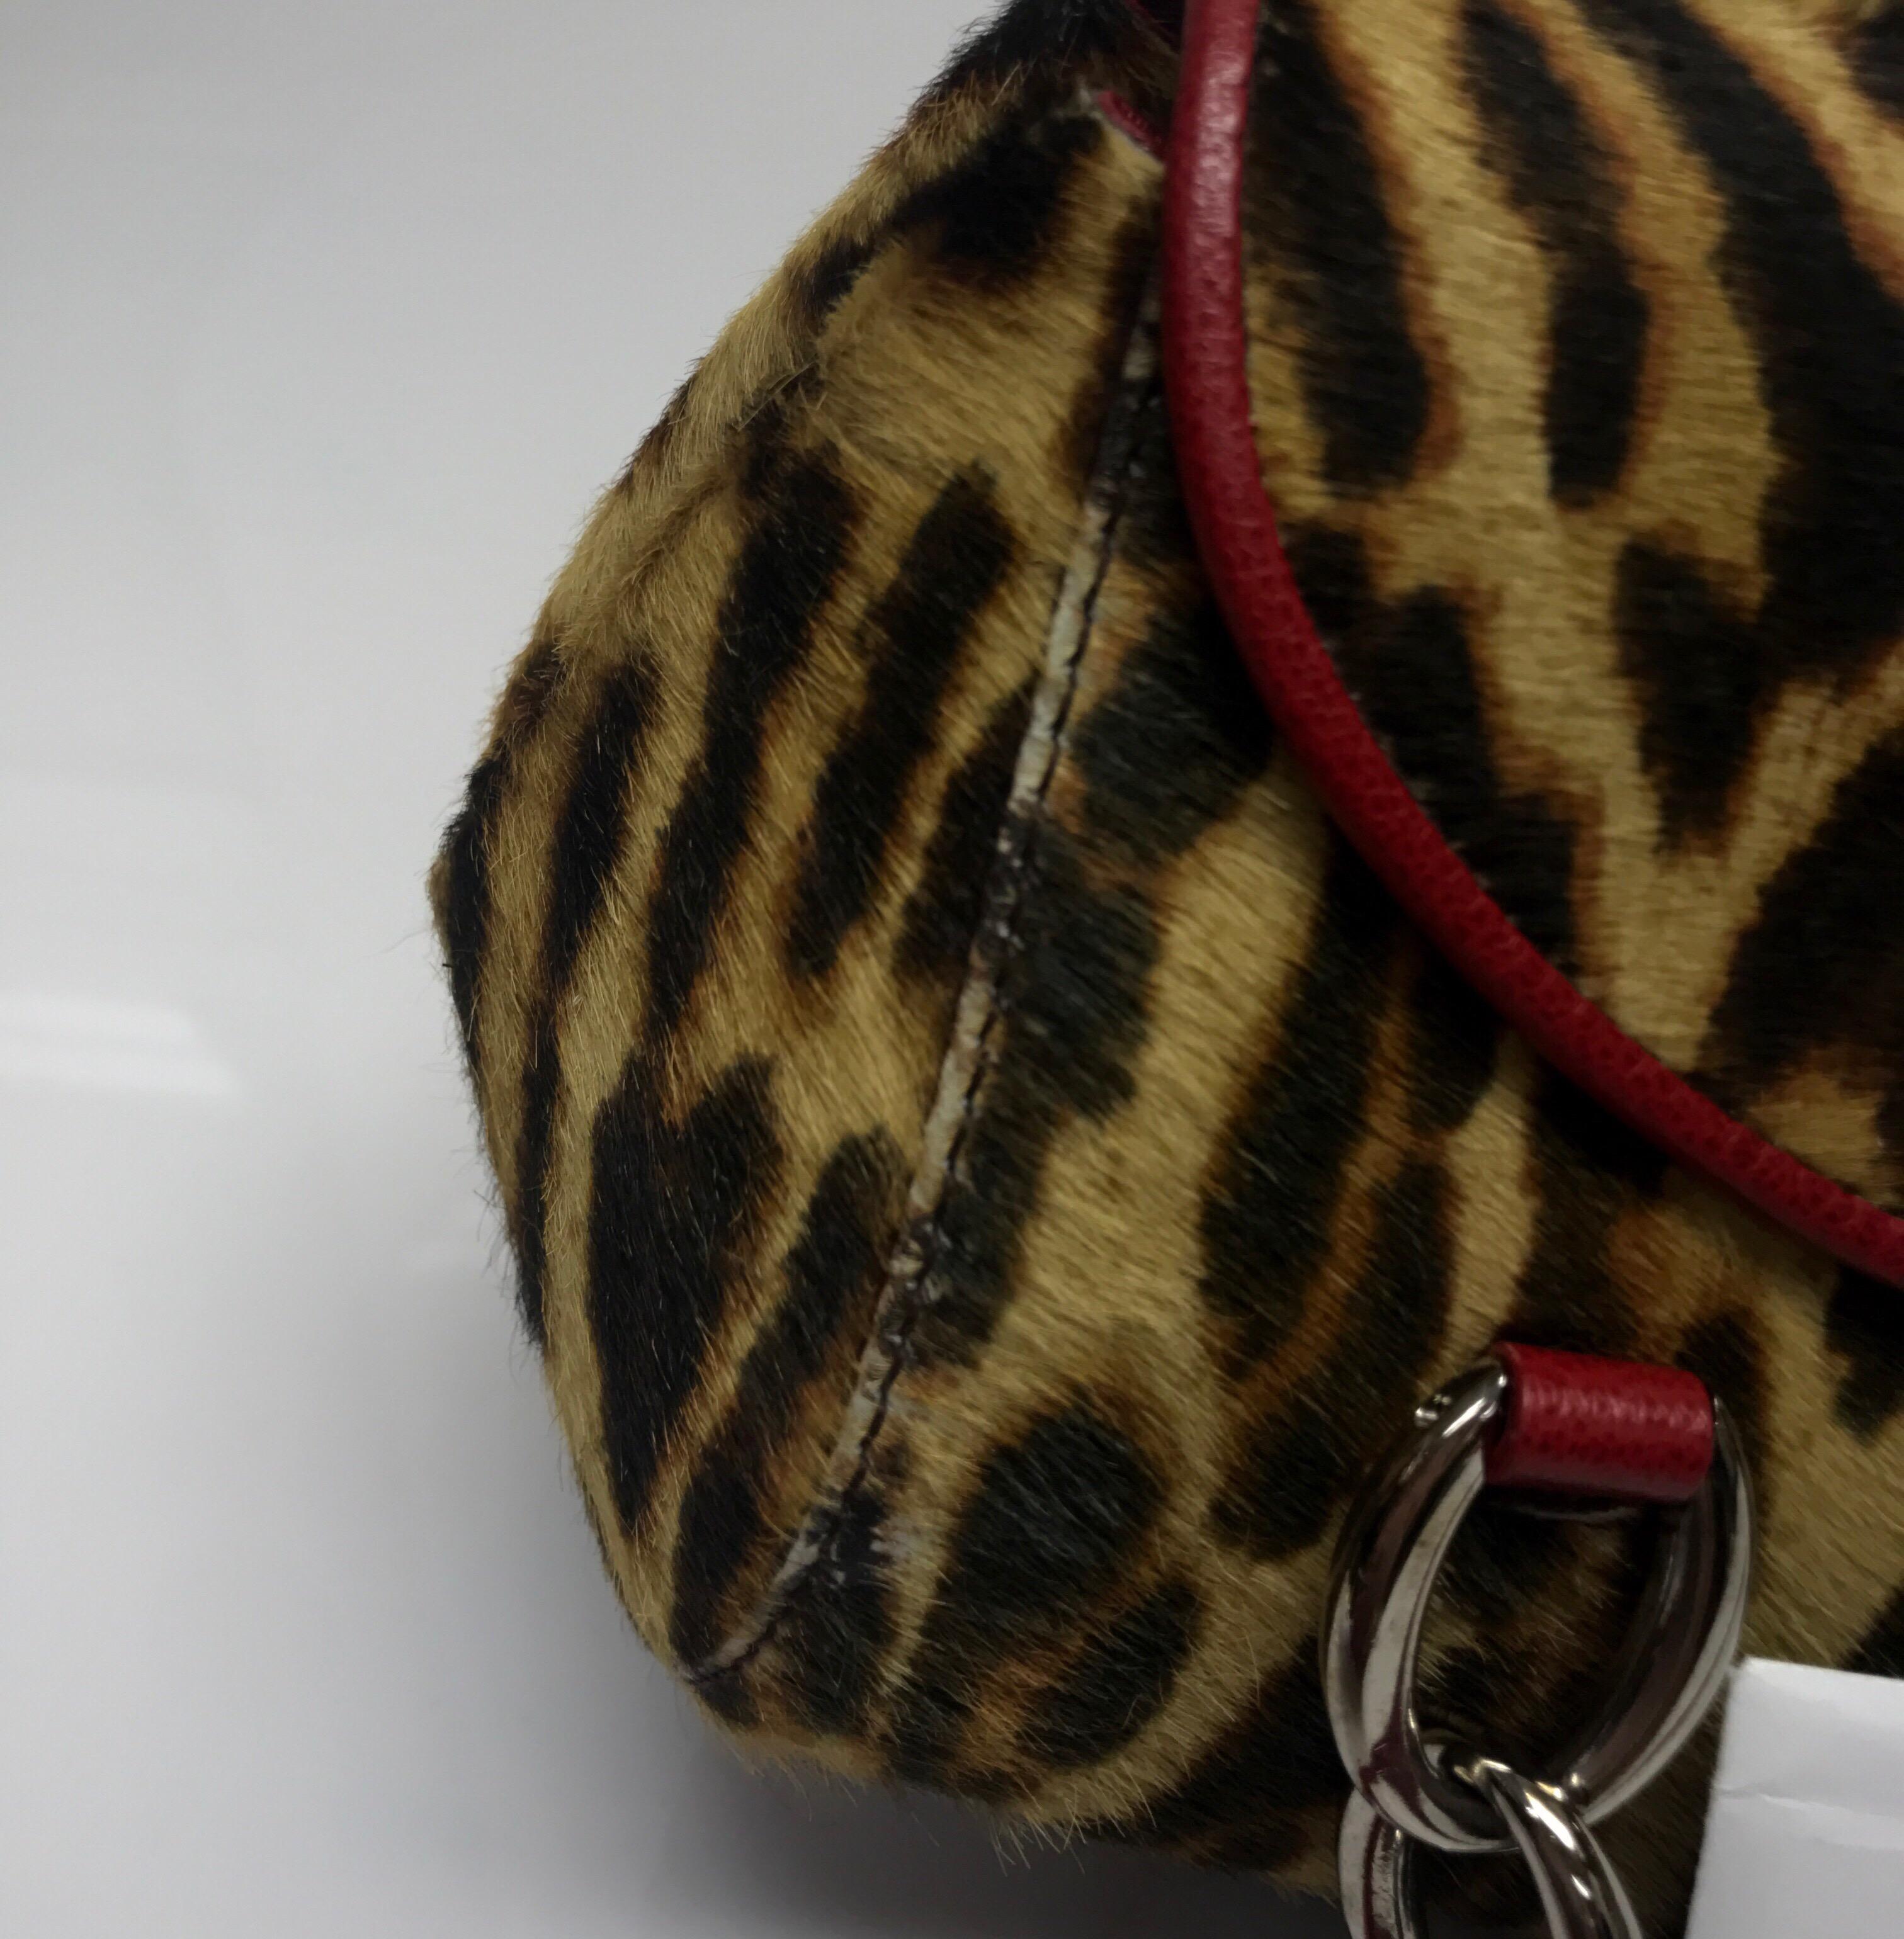 Christian Dior - Sac à main en poils de poney imprimé léopard 5